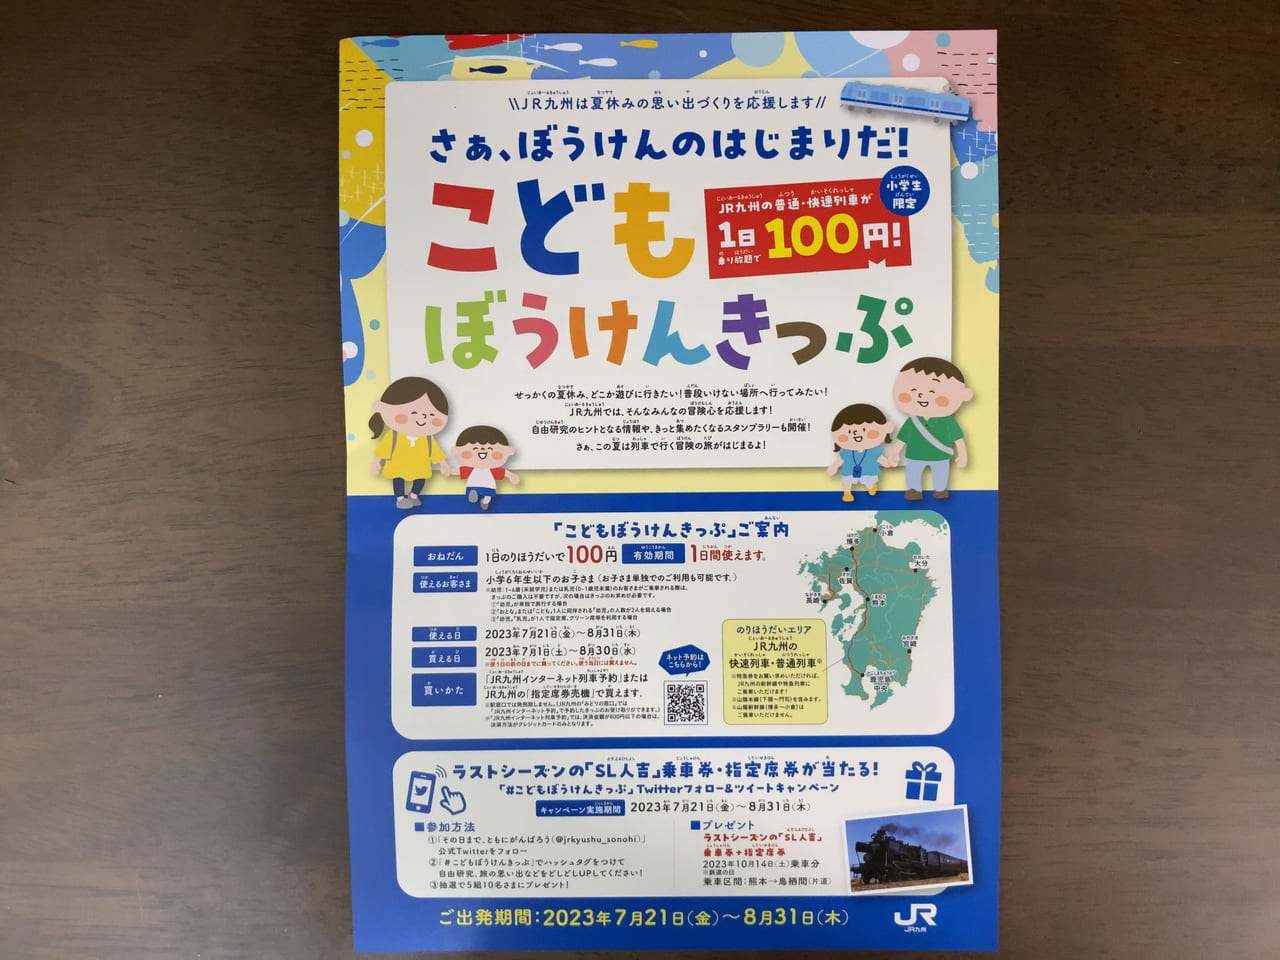 福岡市では、夏休み開始日2023年7月22日(土)から使用出来る「小学生向けのこどもきっぷ」の発売が、JR九州・福岡市営地下鉄・西鉄バスの3社より発表されました。